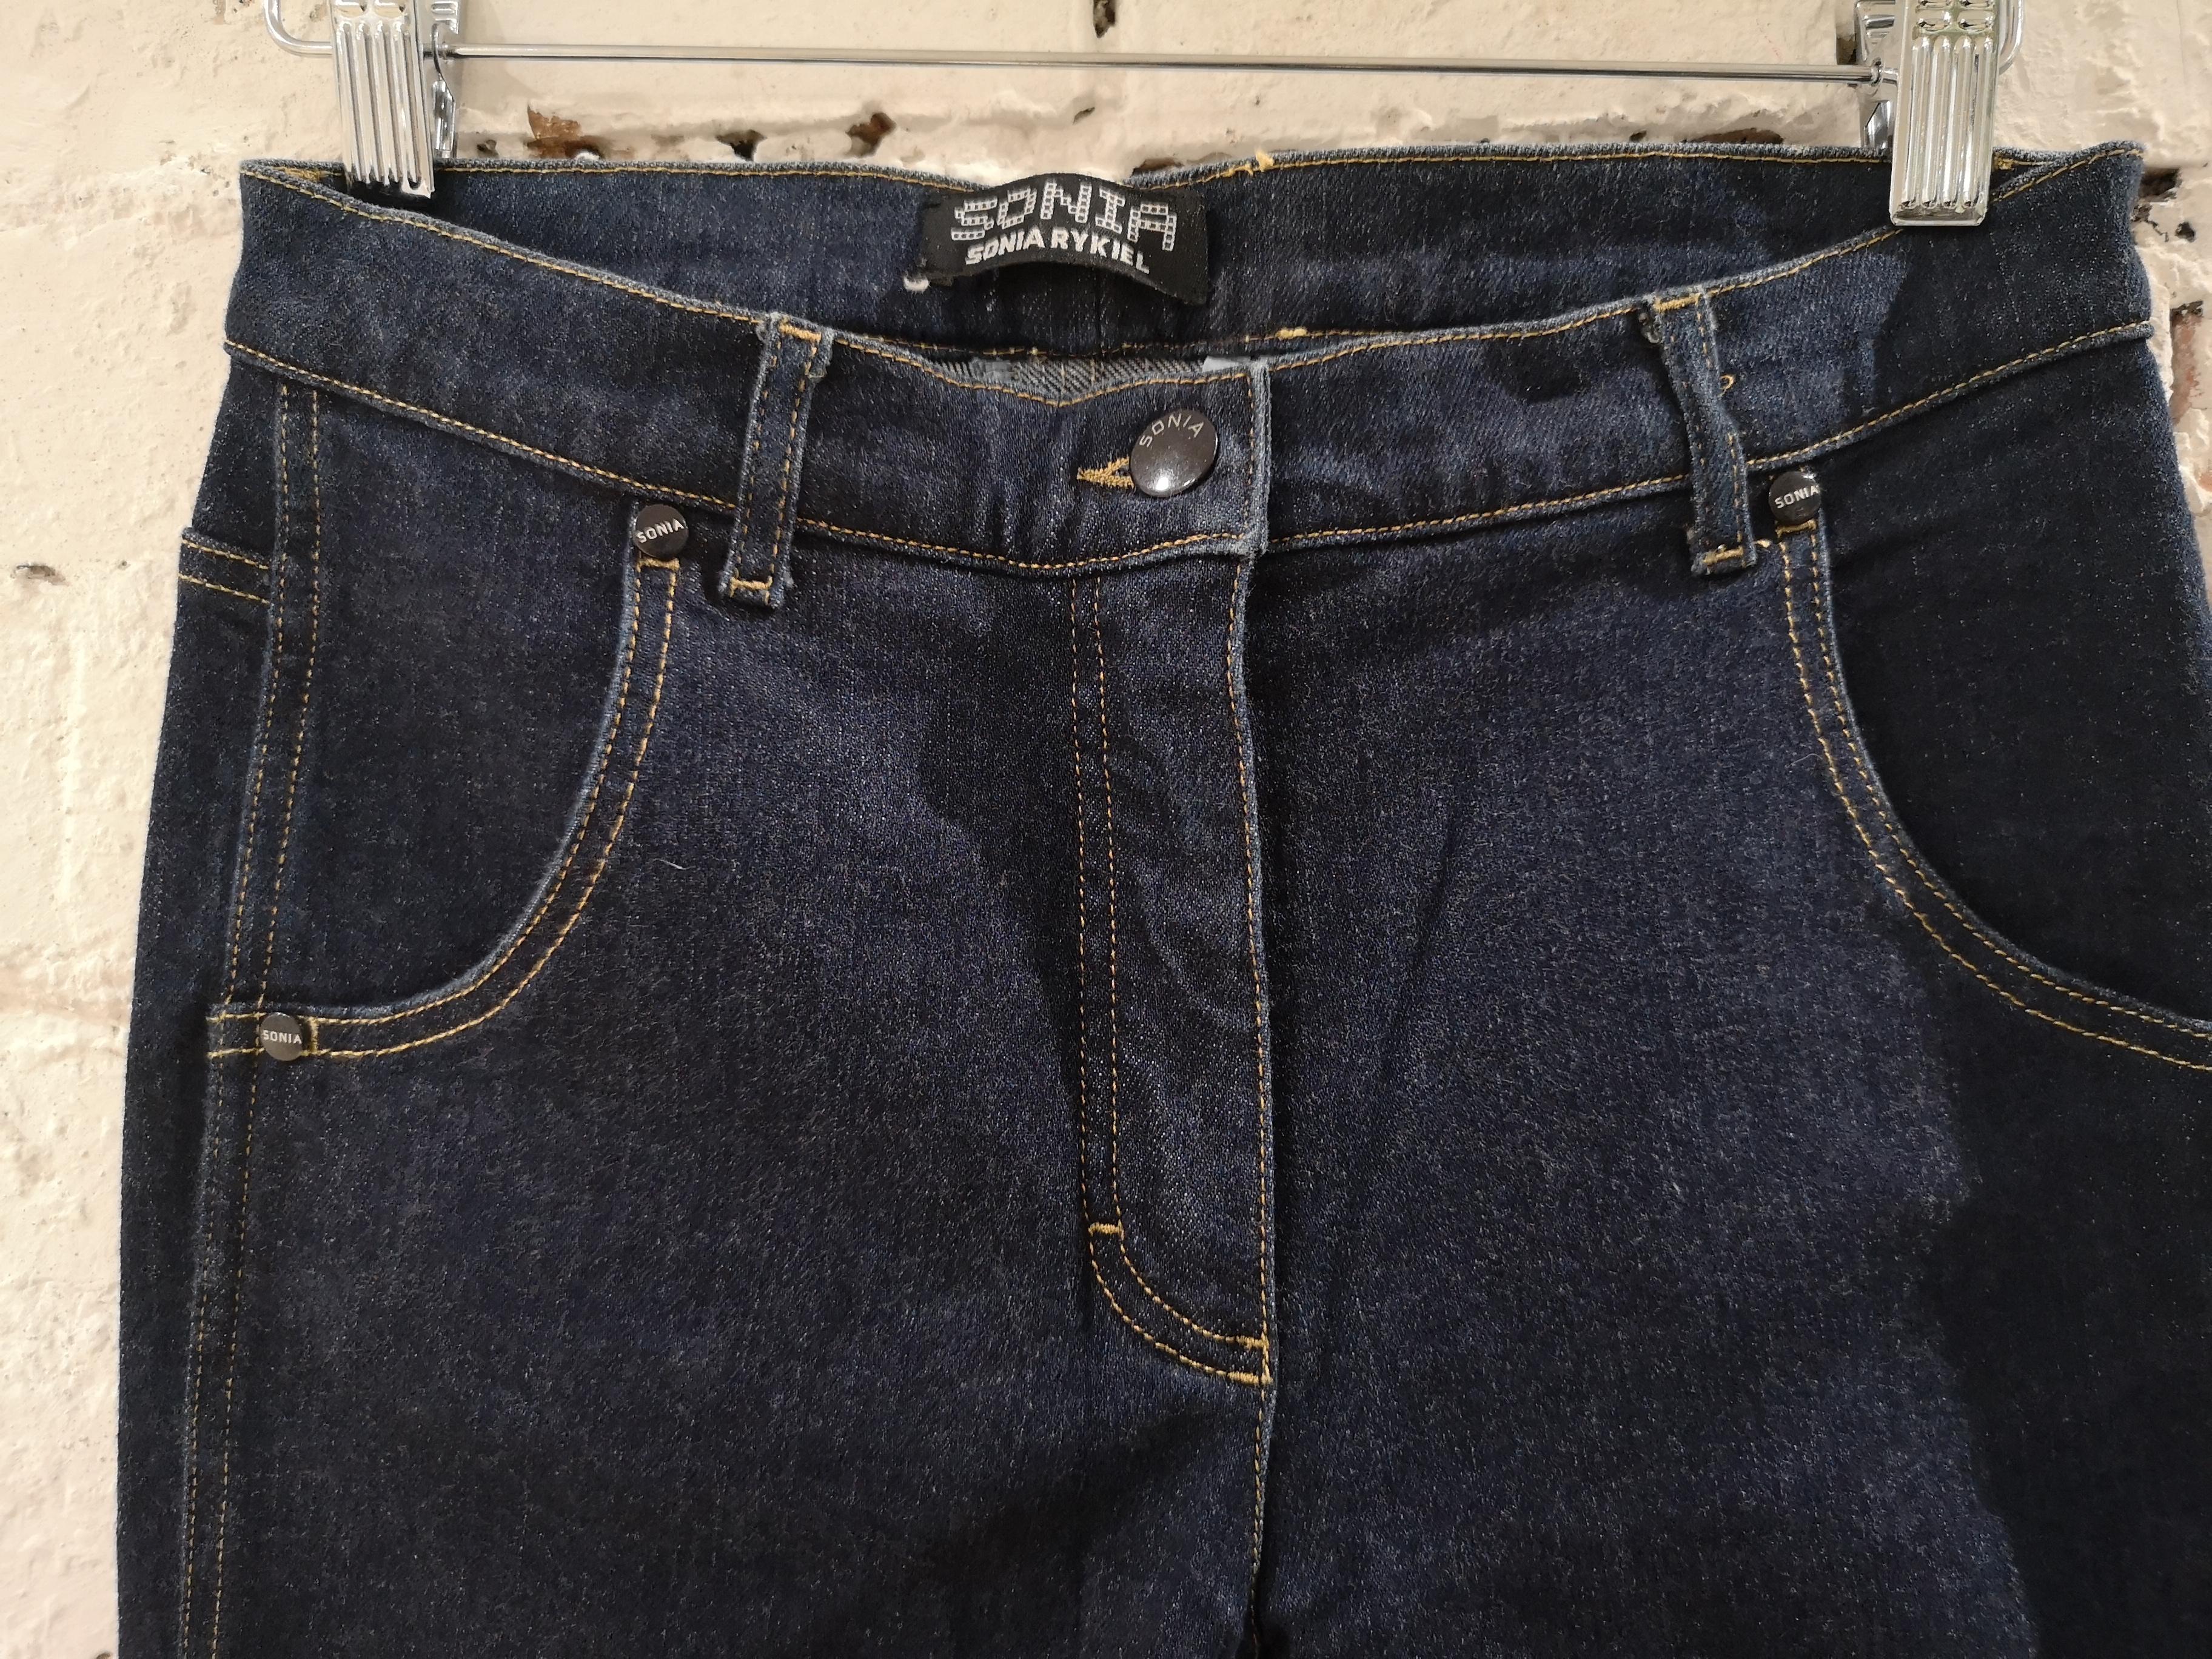 Sonia Rykiel denim cotton jeans
size 36 
total lenght cm 96
waist 68 cm